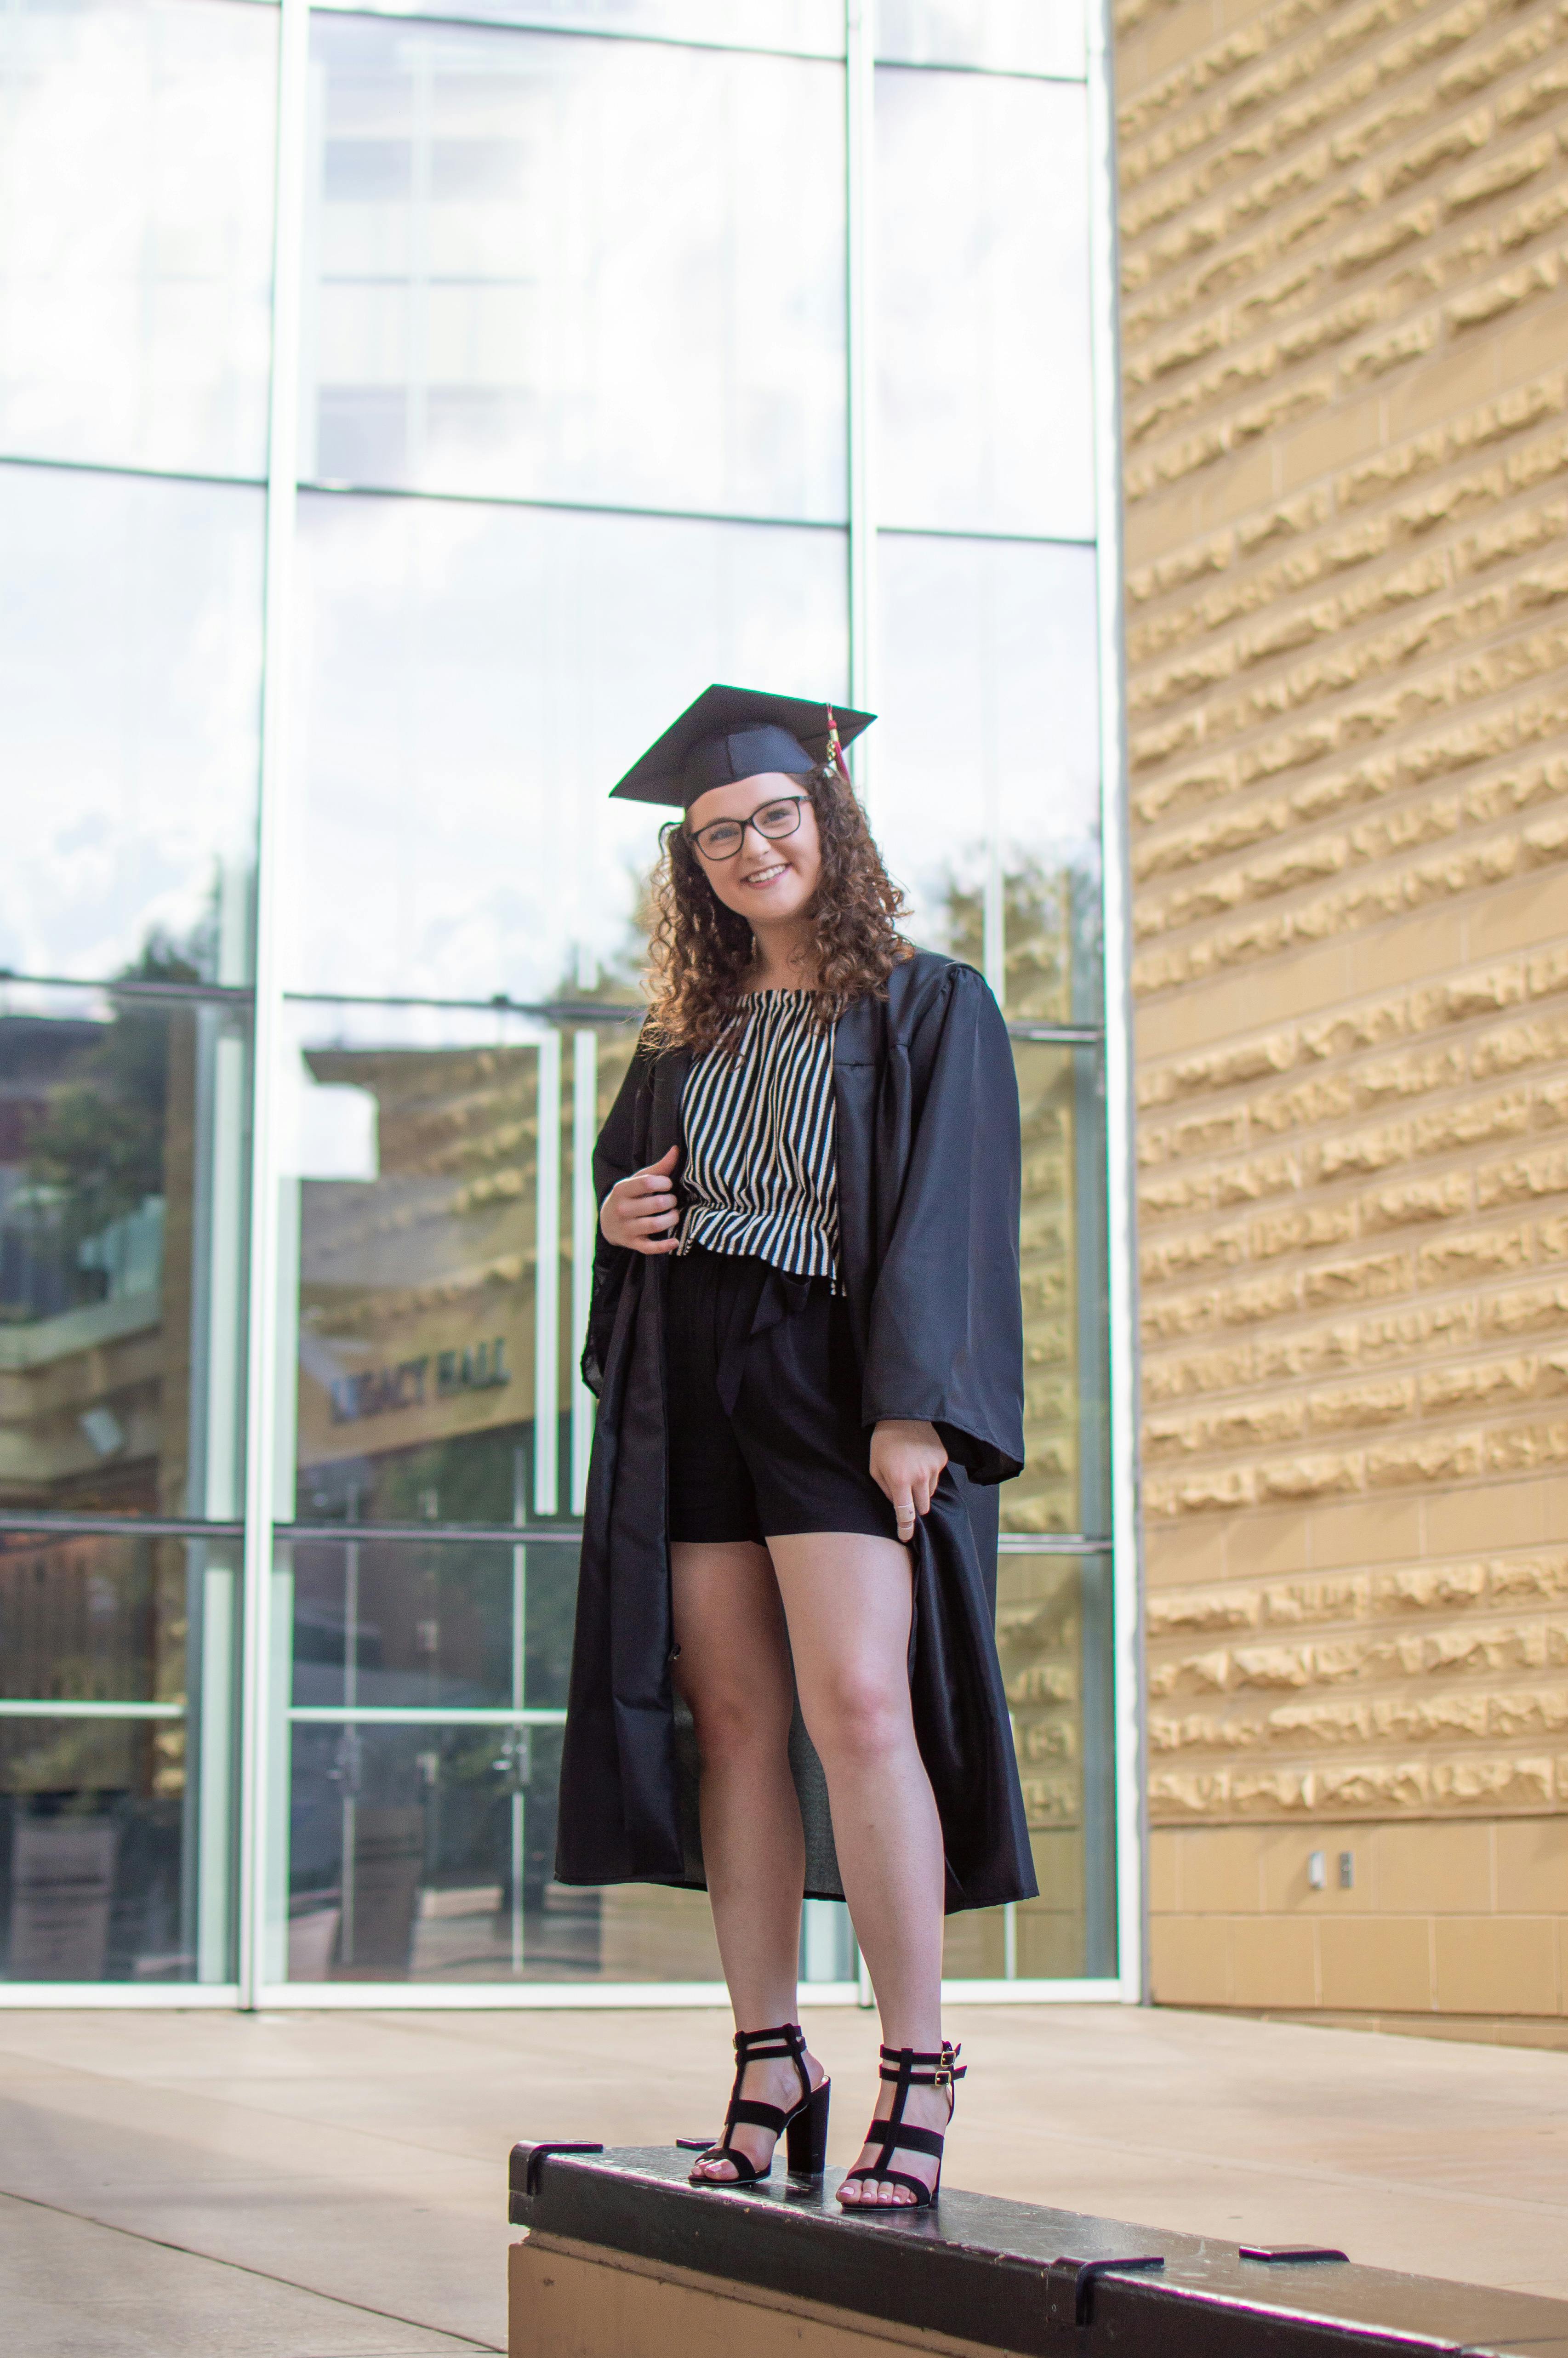 Un fier diplômé de l'université posant pour une photo | Source : Pexels